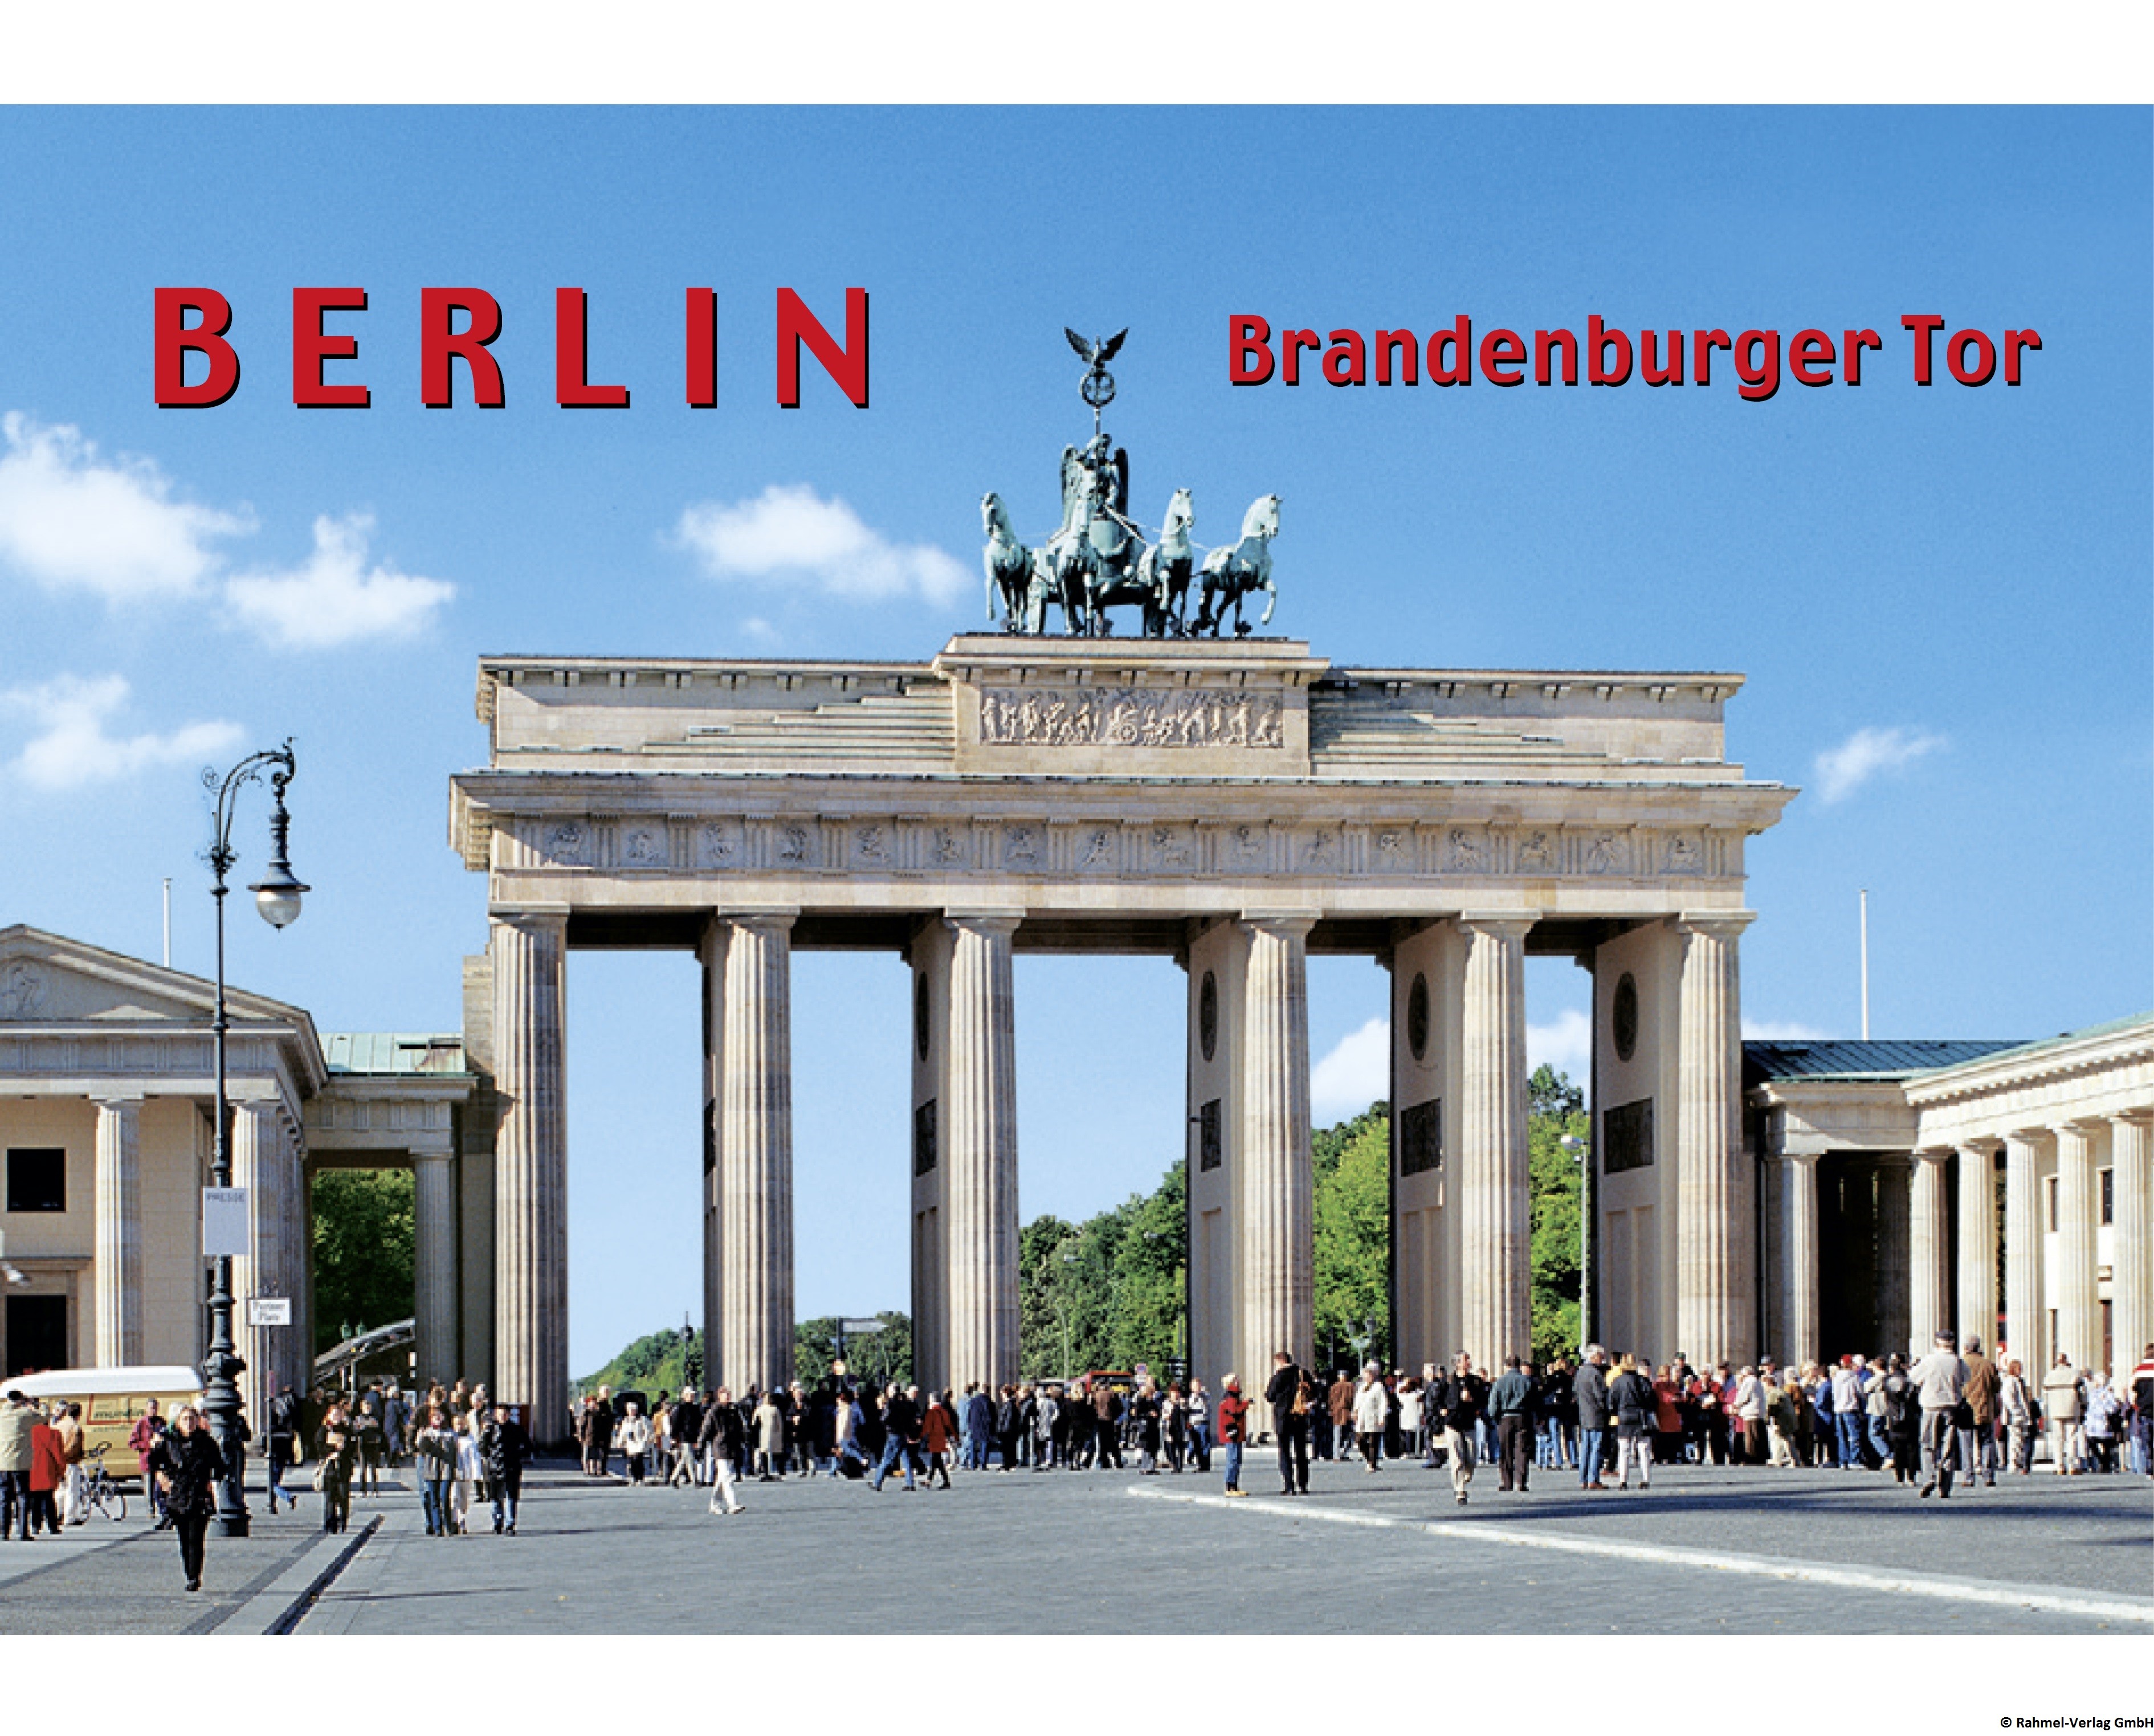 Bildmagnet Brandenburger Tor am Tag